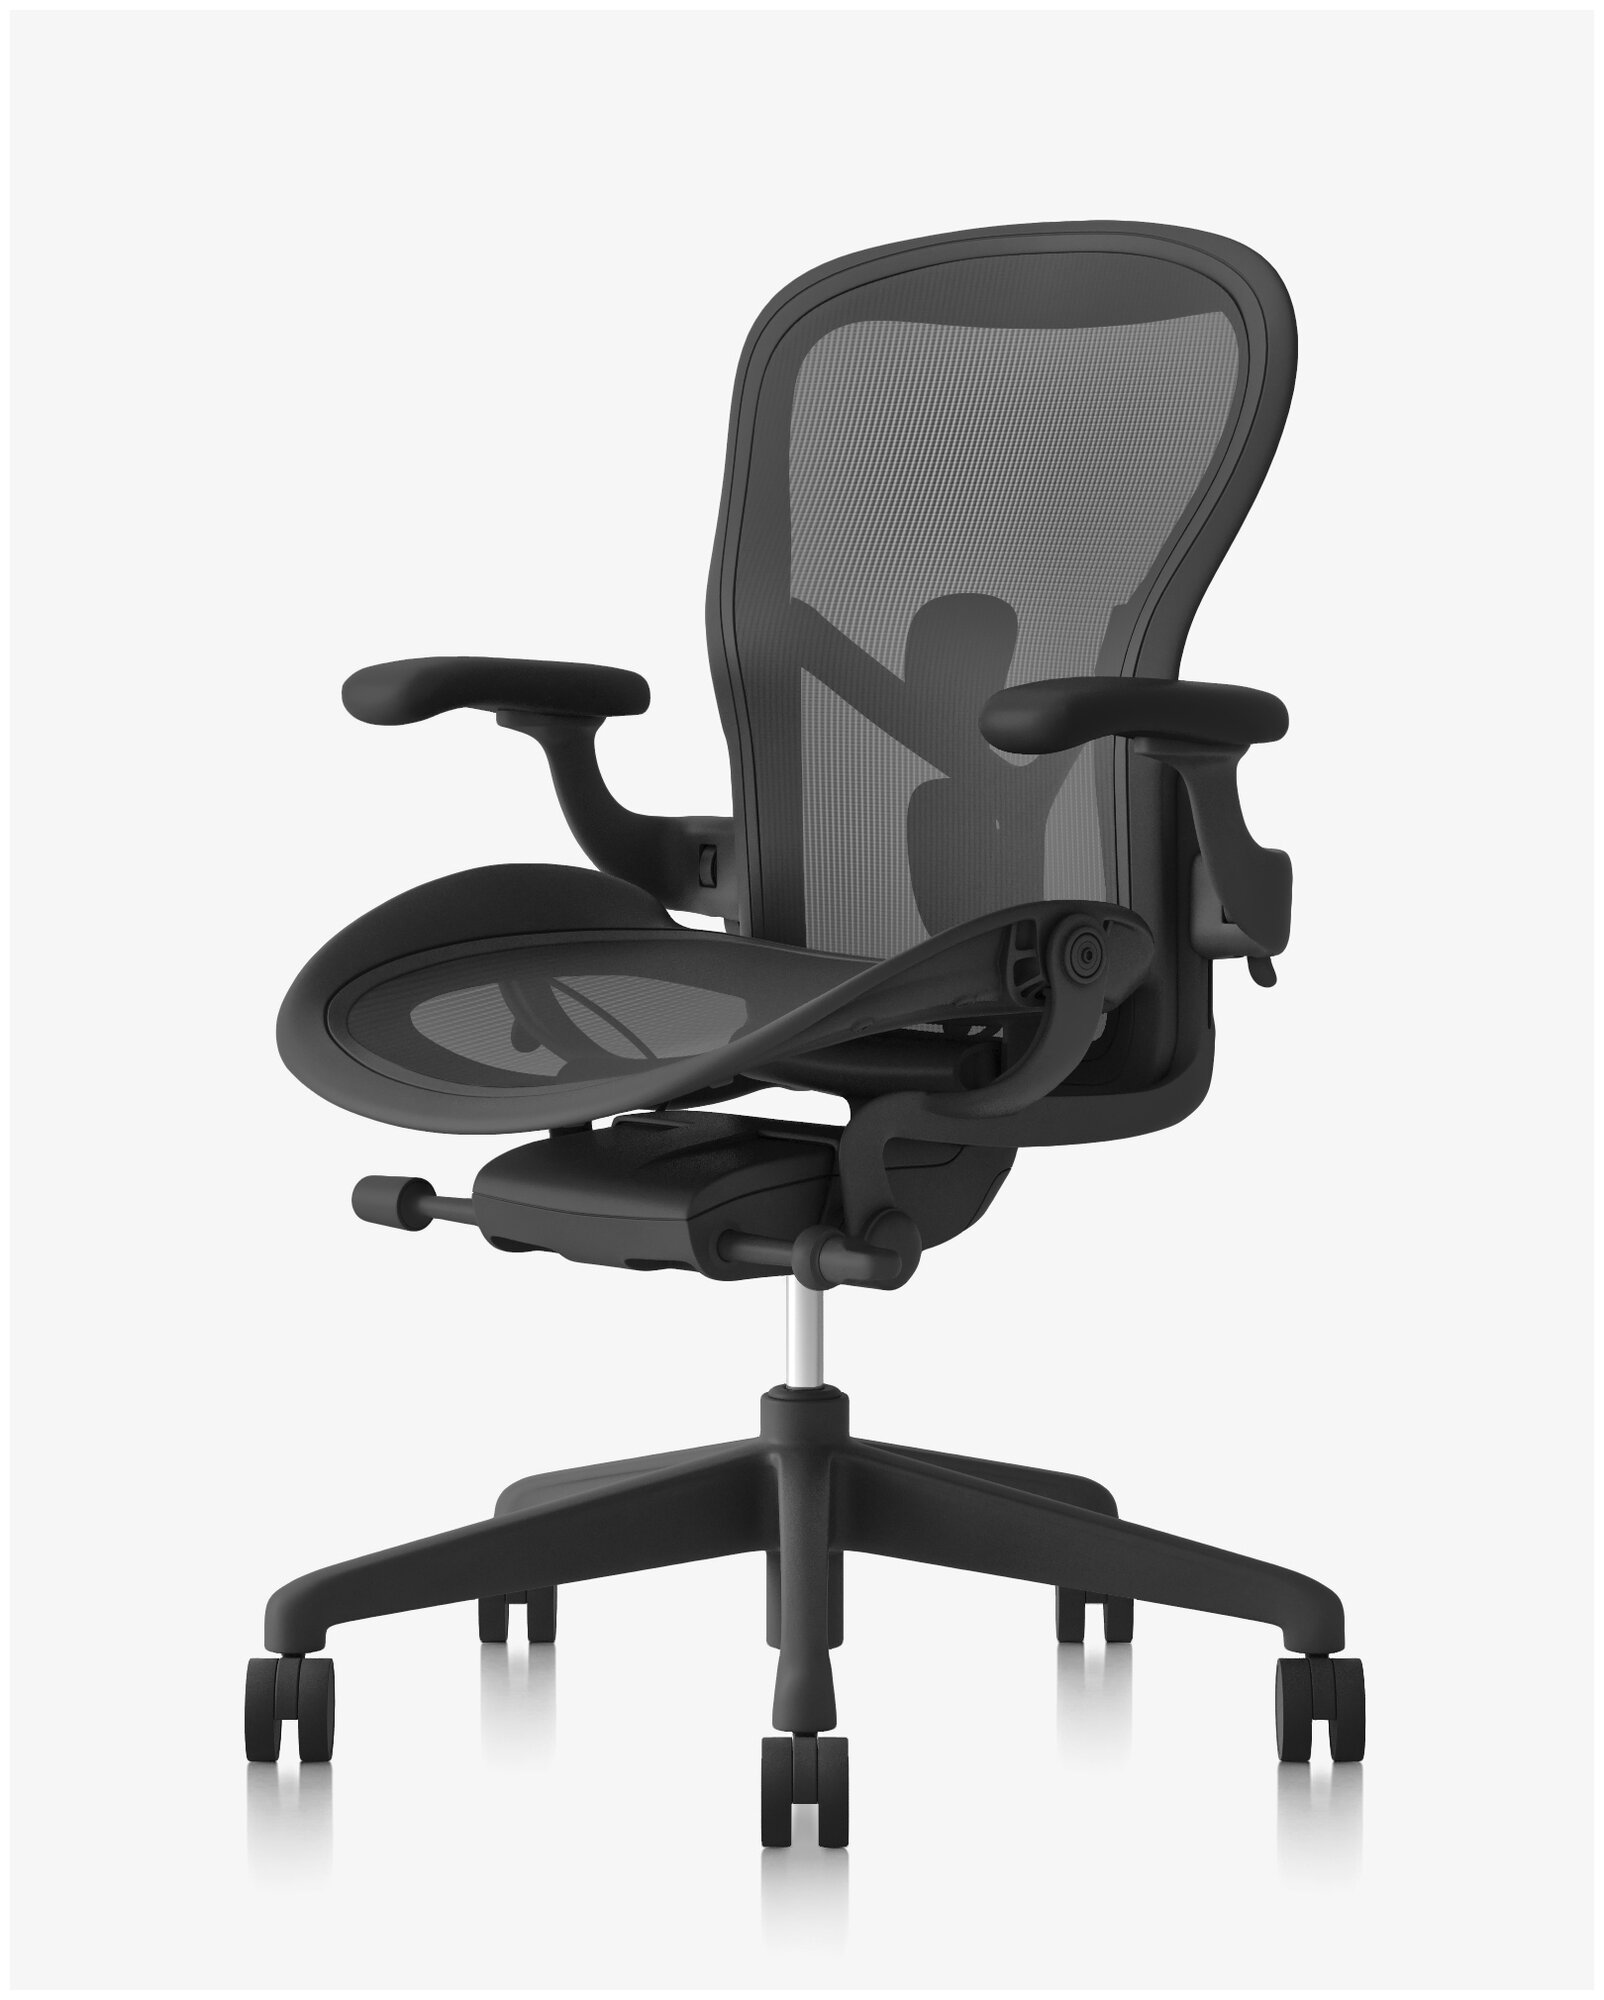 Компьютерное кресло Herman Miller Aeron new B офисное, обивка: текстиль, цвет: graphite